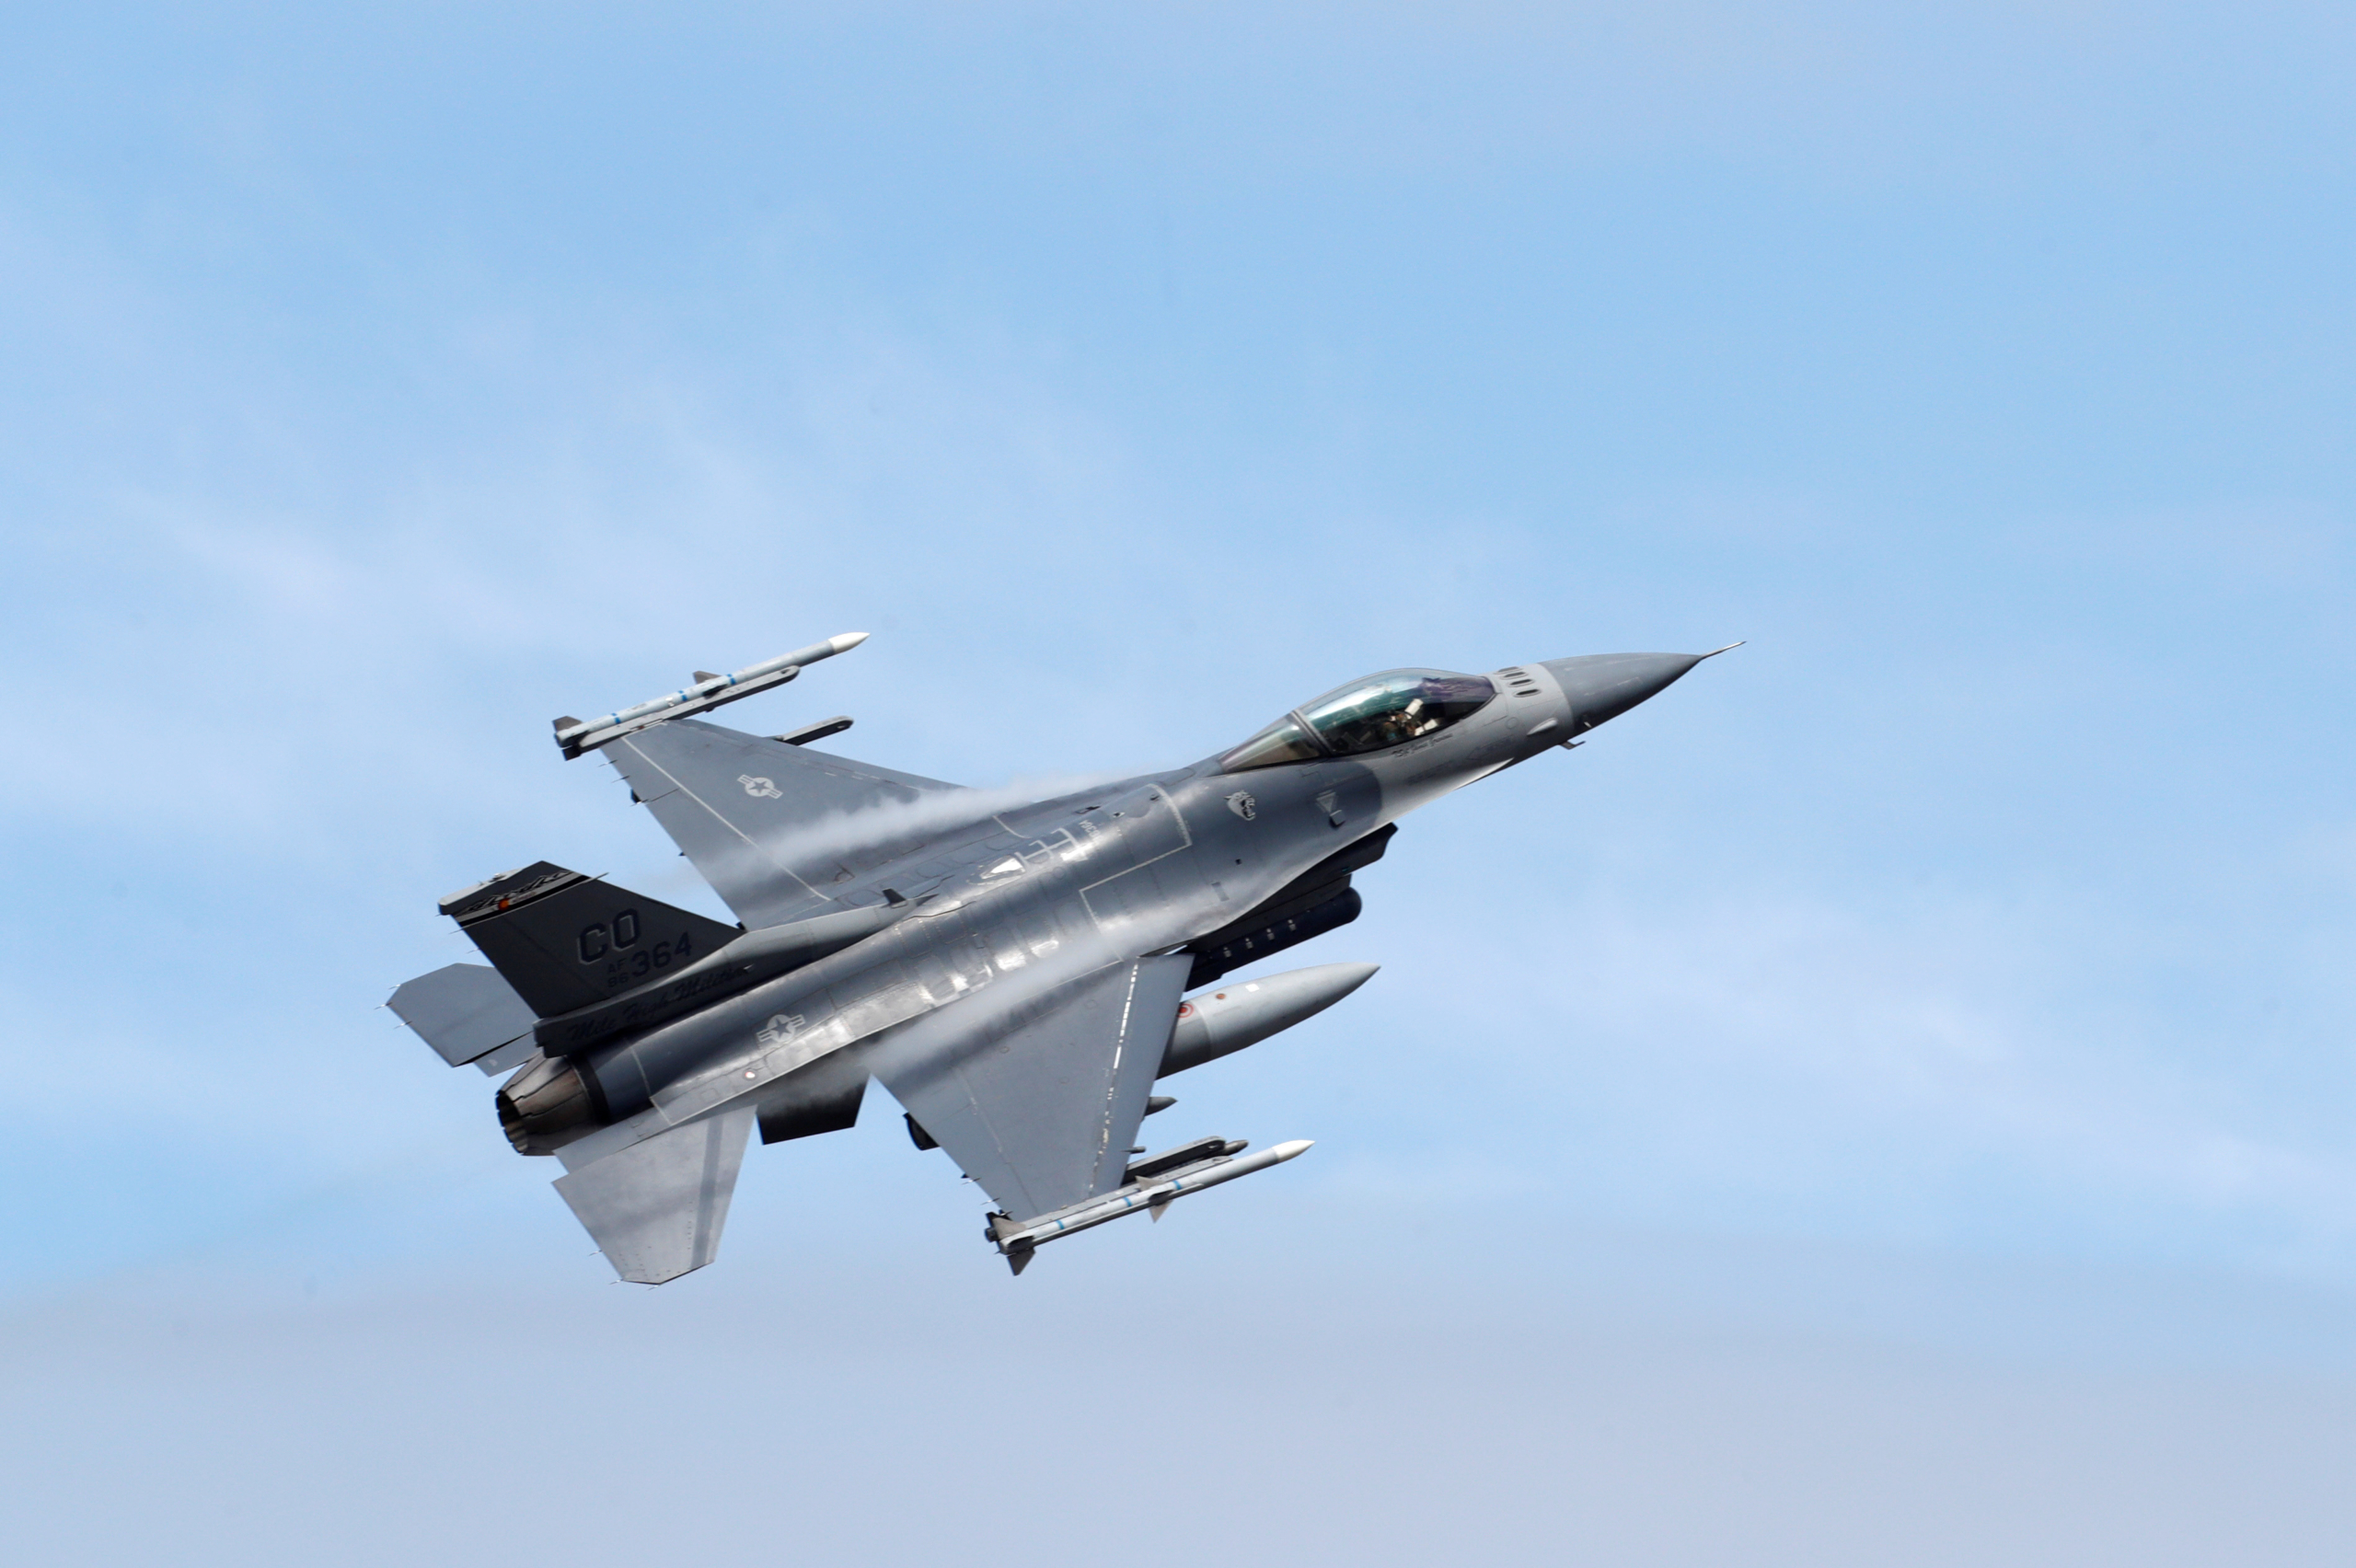 Chiến đấu cơ F-16 Fighting Falcon của Không quân Hoa Kỳ từ Đơn vị 140 của Lực lượng Vệ binh Quốc gia Không quân Colorado trong cuộc tập trận Sabre Strike của NATO bay qua căn cứ không quân quân sự Amari, Estonia, hôm 12/06/2018. (Ảnh: Ints Kalnins/Reuters)